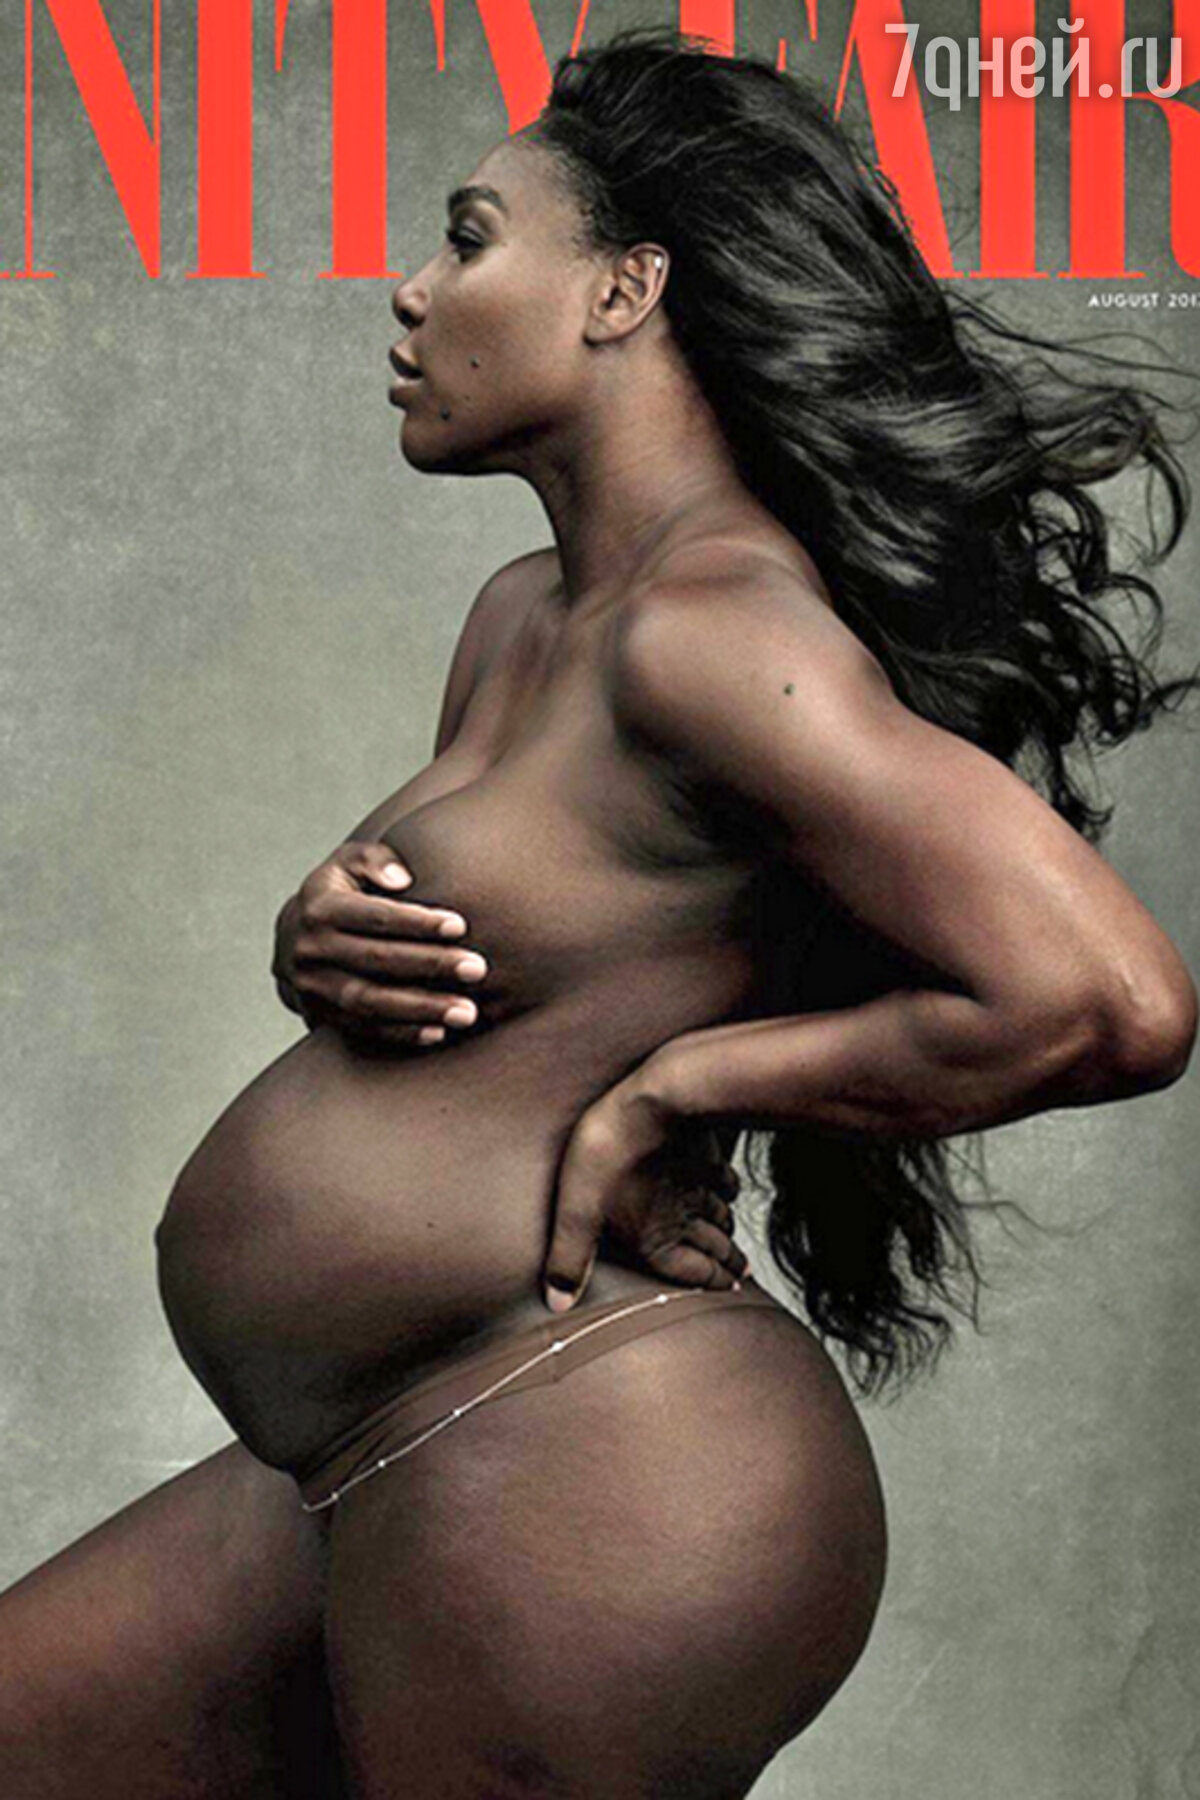 Беременная Серена Уильямс снялась голой для обложки глянцевого журнала -  7Дней.ру